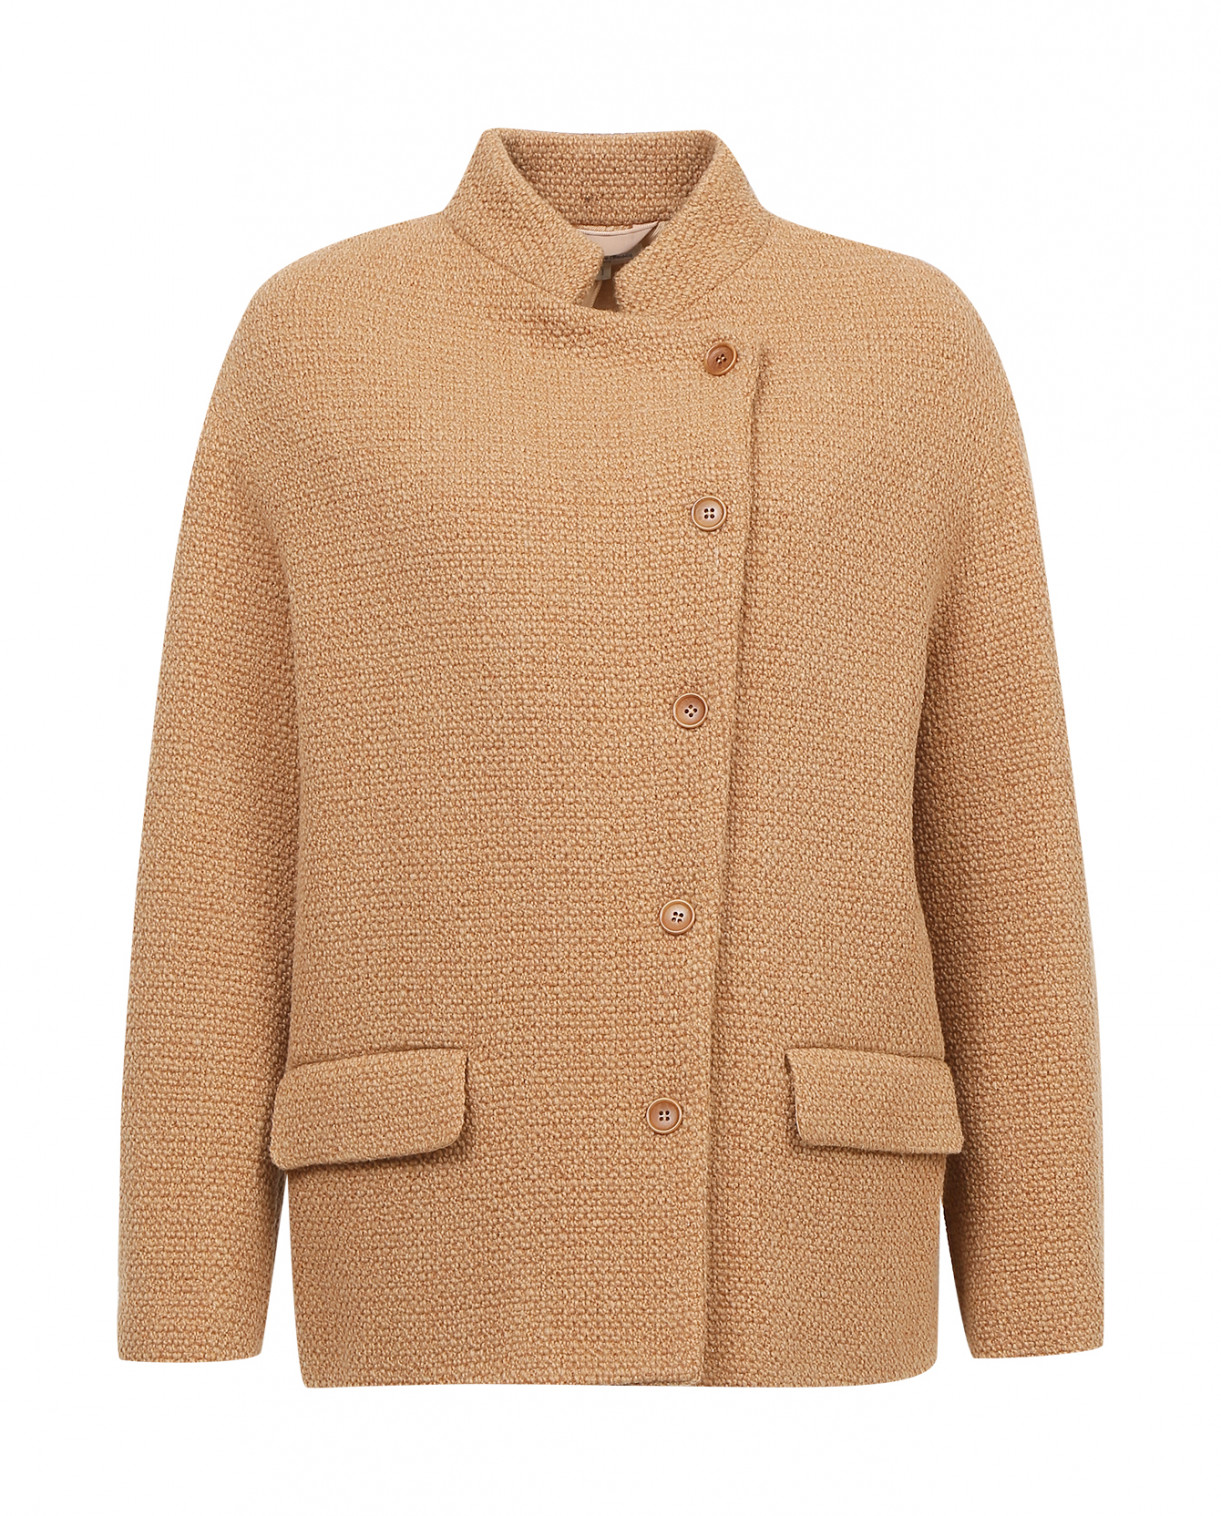 Пальто из шерсти на пуговицах Hartford  –  Общий вид  – Цвет:  Бежевый